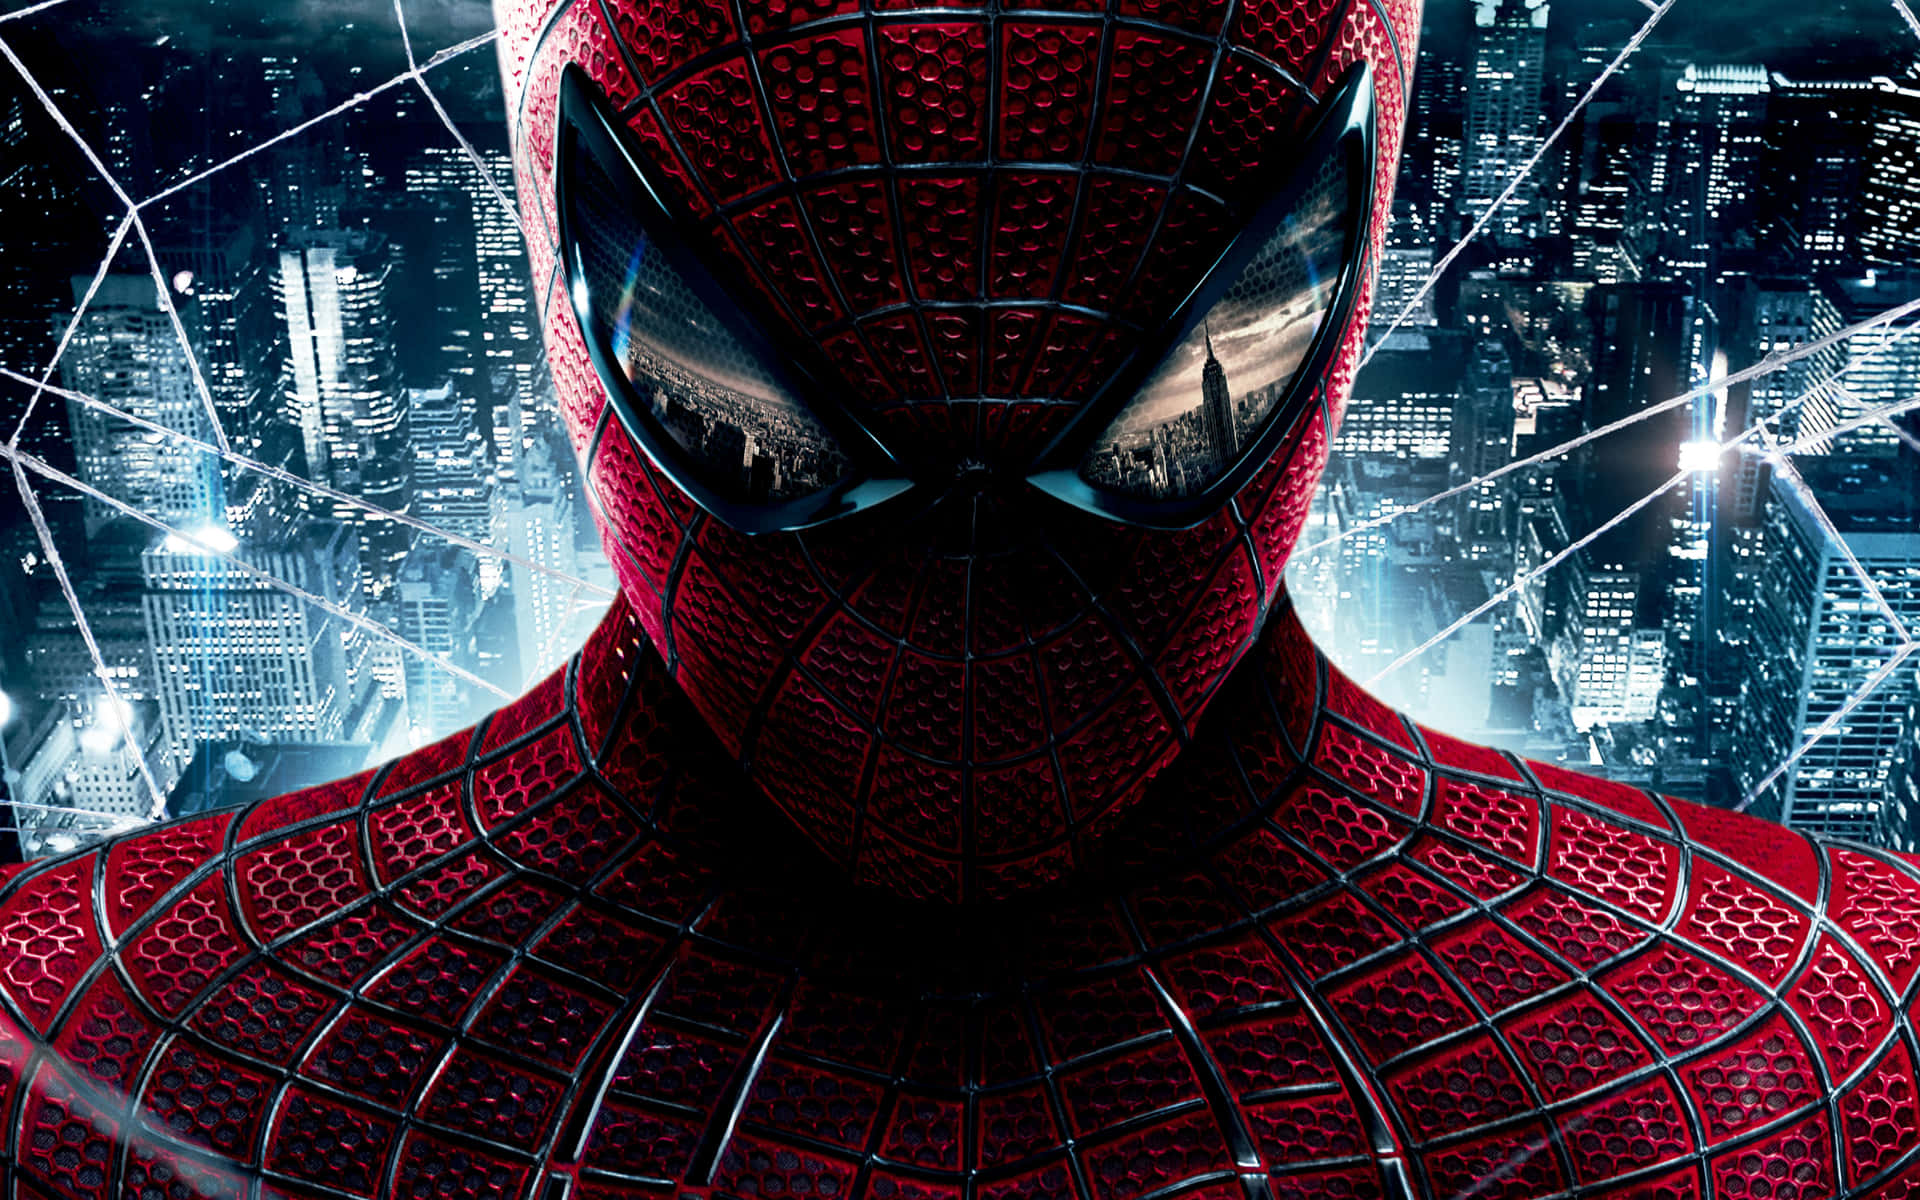 De første tre Spiderman-film vender tilbage til en spændende tredjedel. Wallpaper